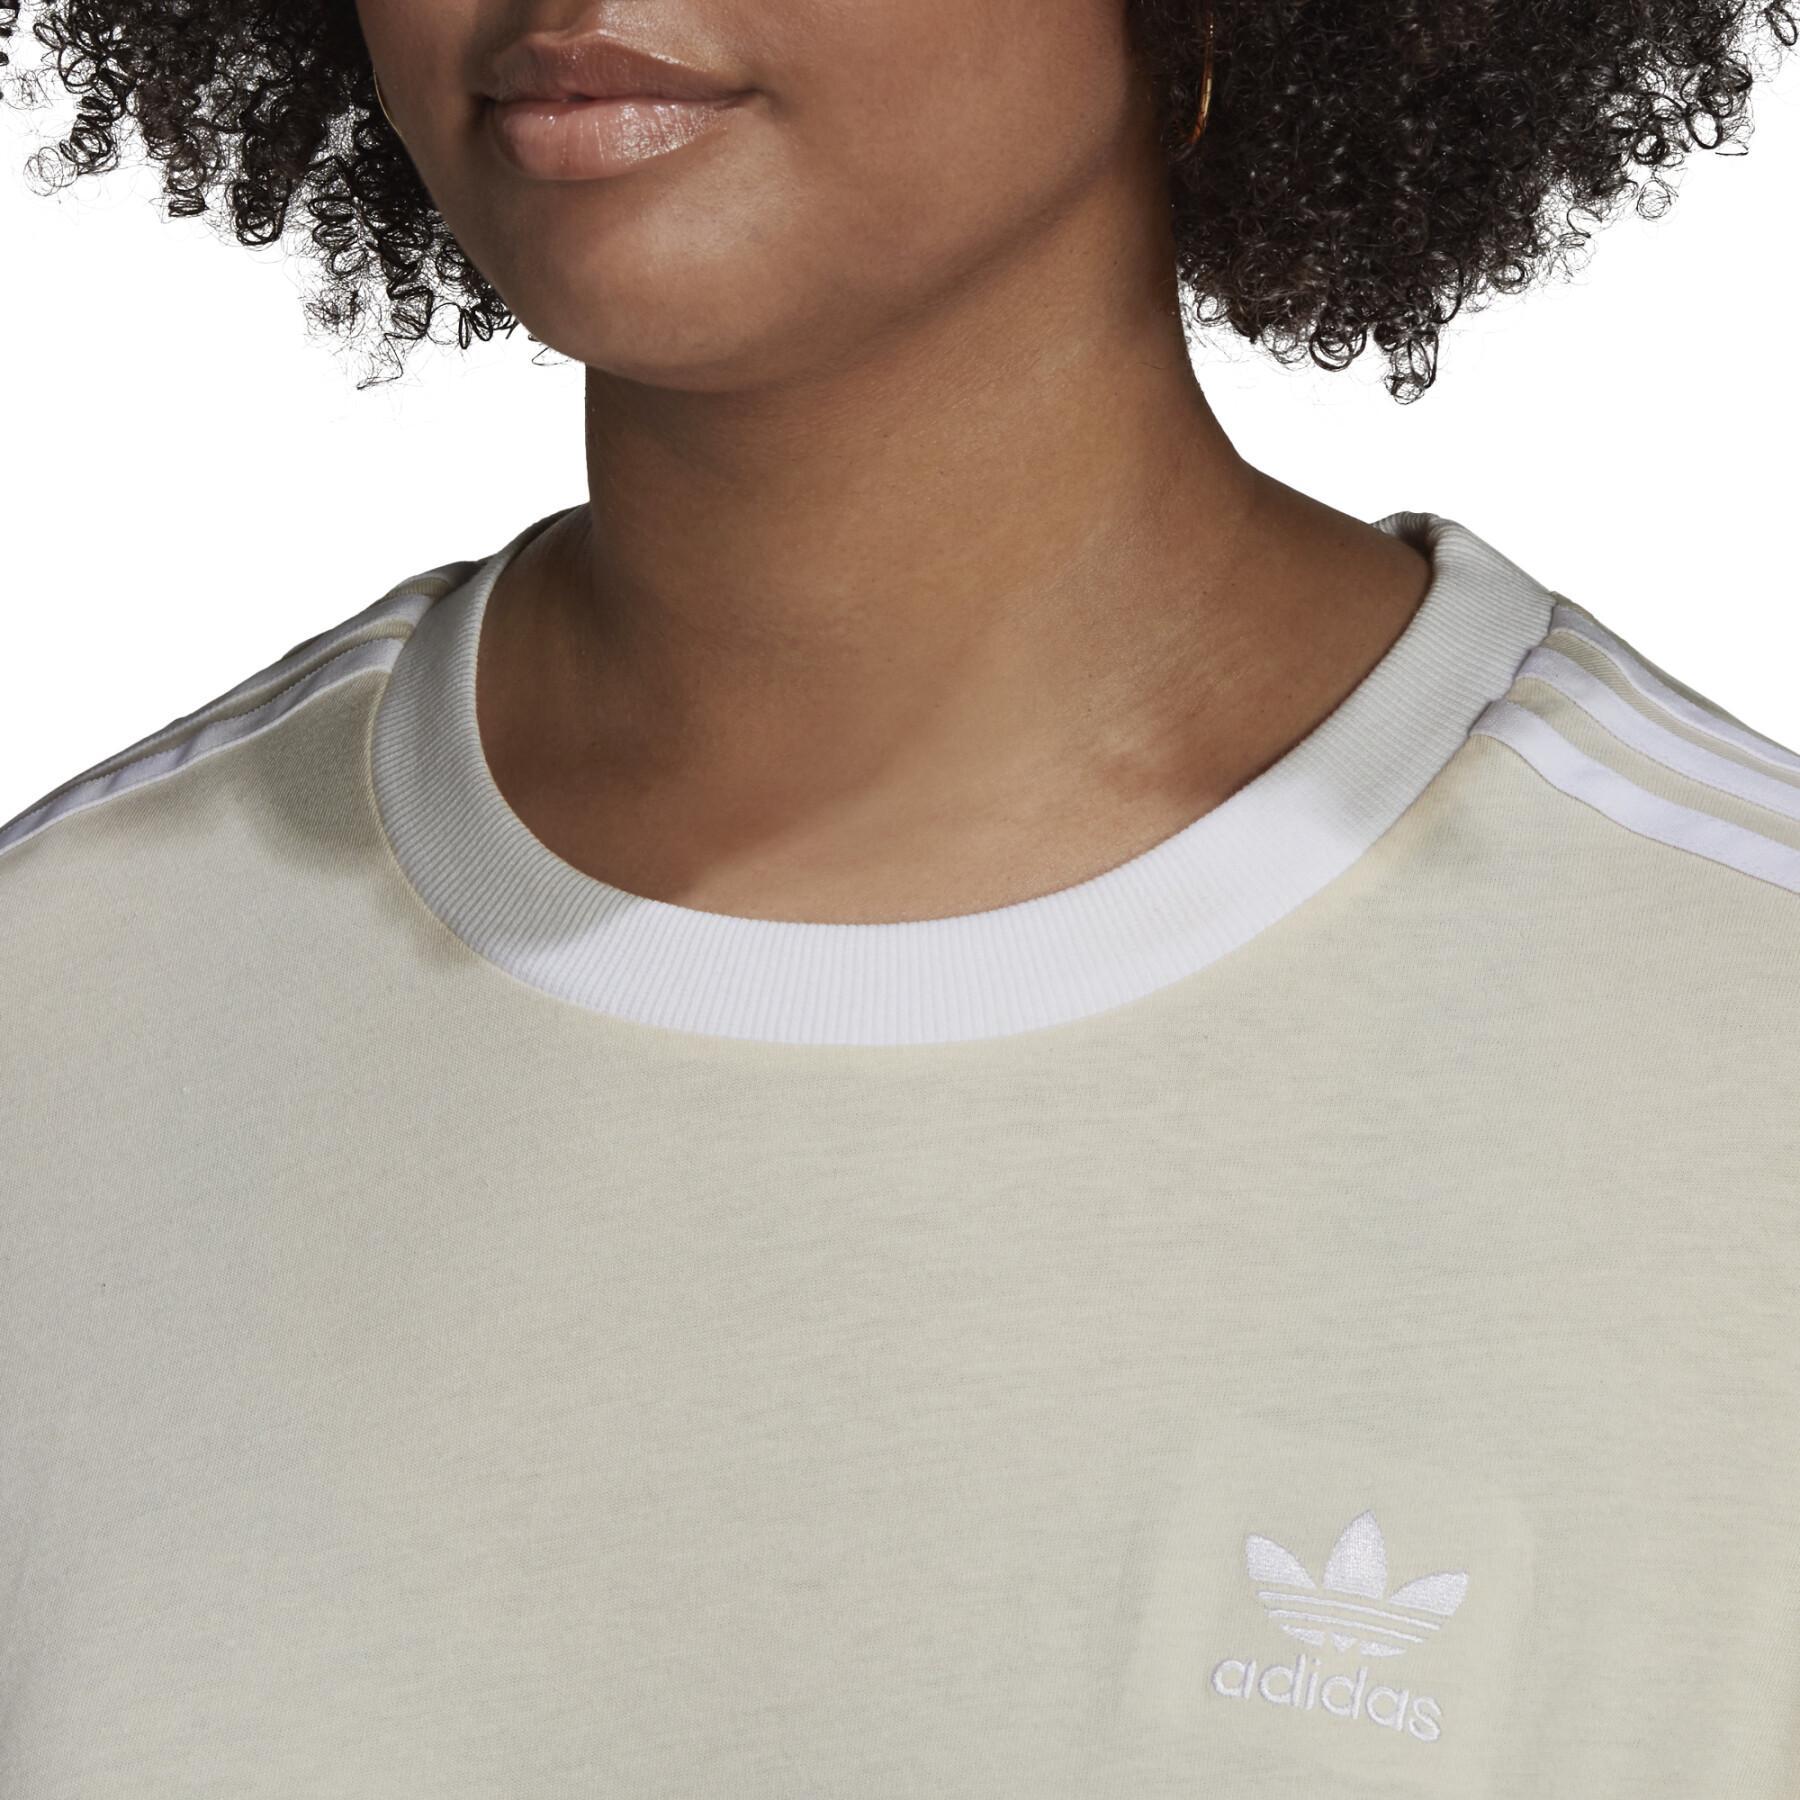 Maglietta da donna adidas Originals Adicolor s 3-Stripes (Grandes tailles)